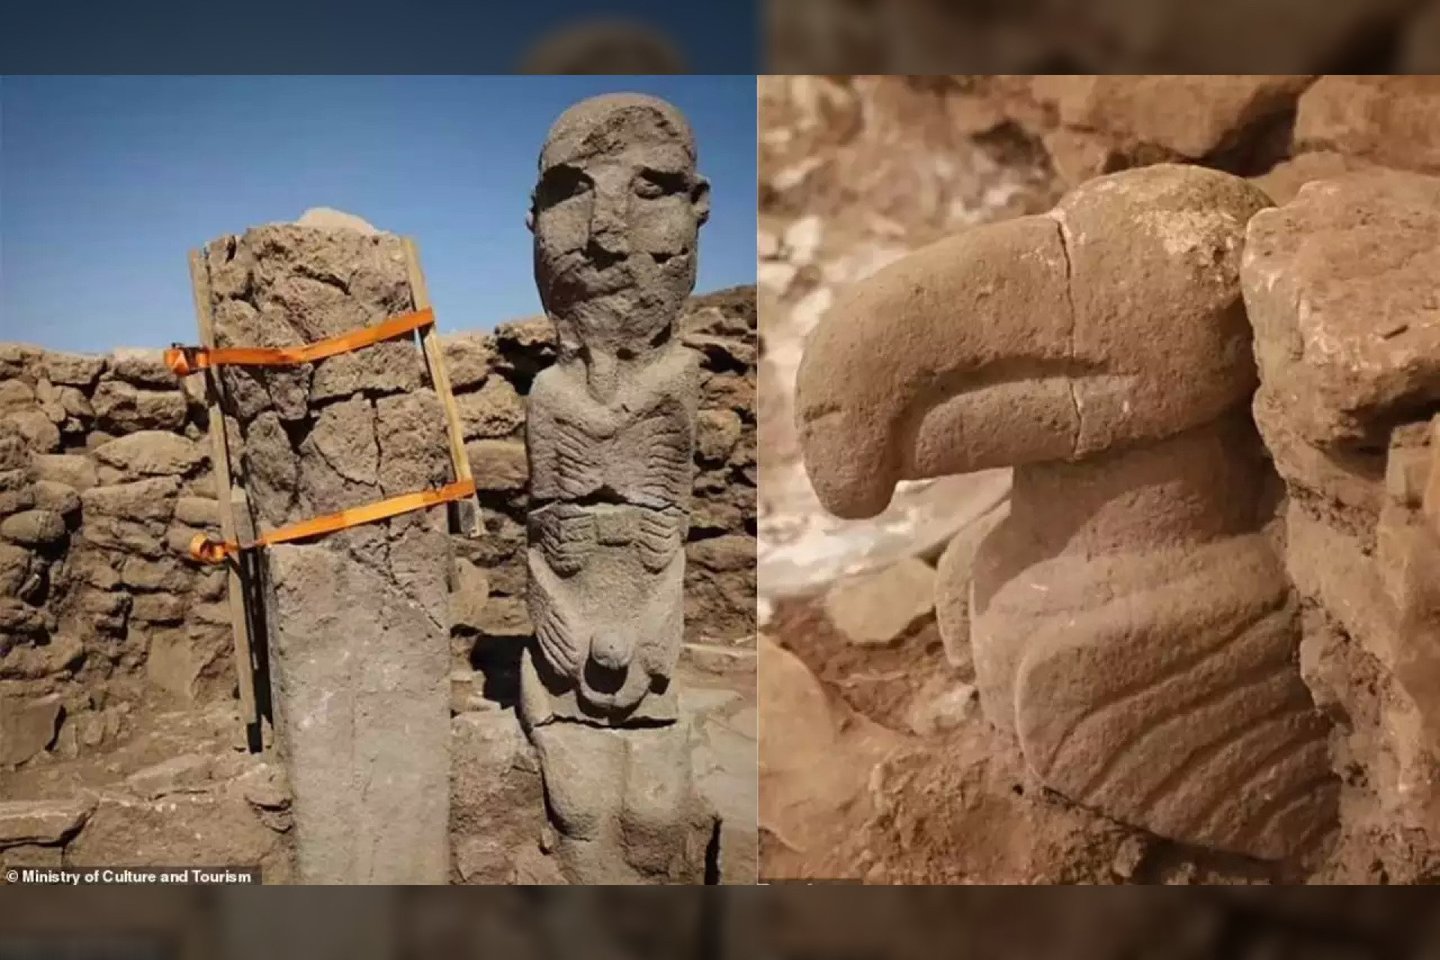  Archeologai Turkijoje atkasė beveik 11 000 metų senumo statulą, kurioje galimai pavaizduotas milžiniškas vyras, laikantis savo penį.<br> Turkijos Kultūros ir turizmo ministerijos nuotr.